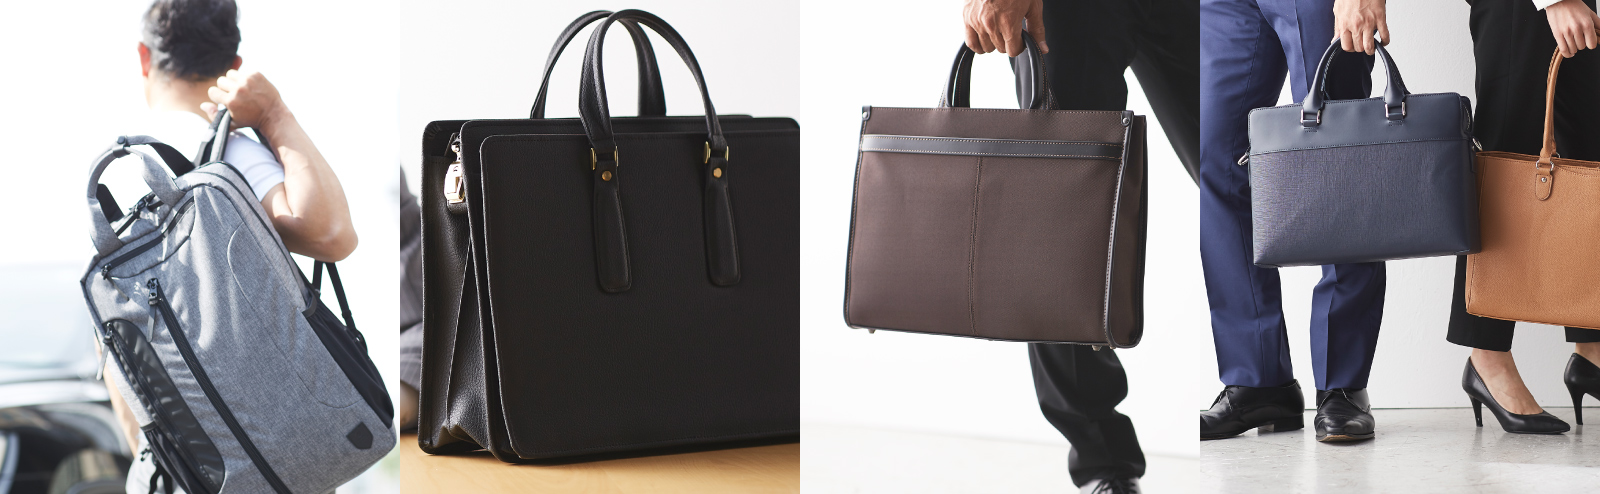 営業銀行バッグ 41cm型 渉外用かばんボストンブリーフケース | PRODUCTS | 鞄、バッグの製造、販売のUNOFUKU